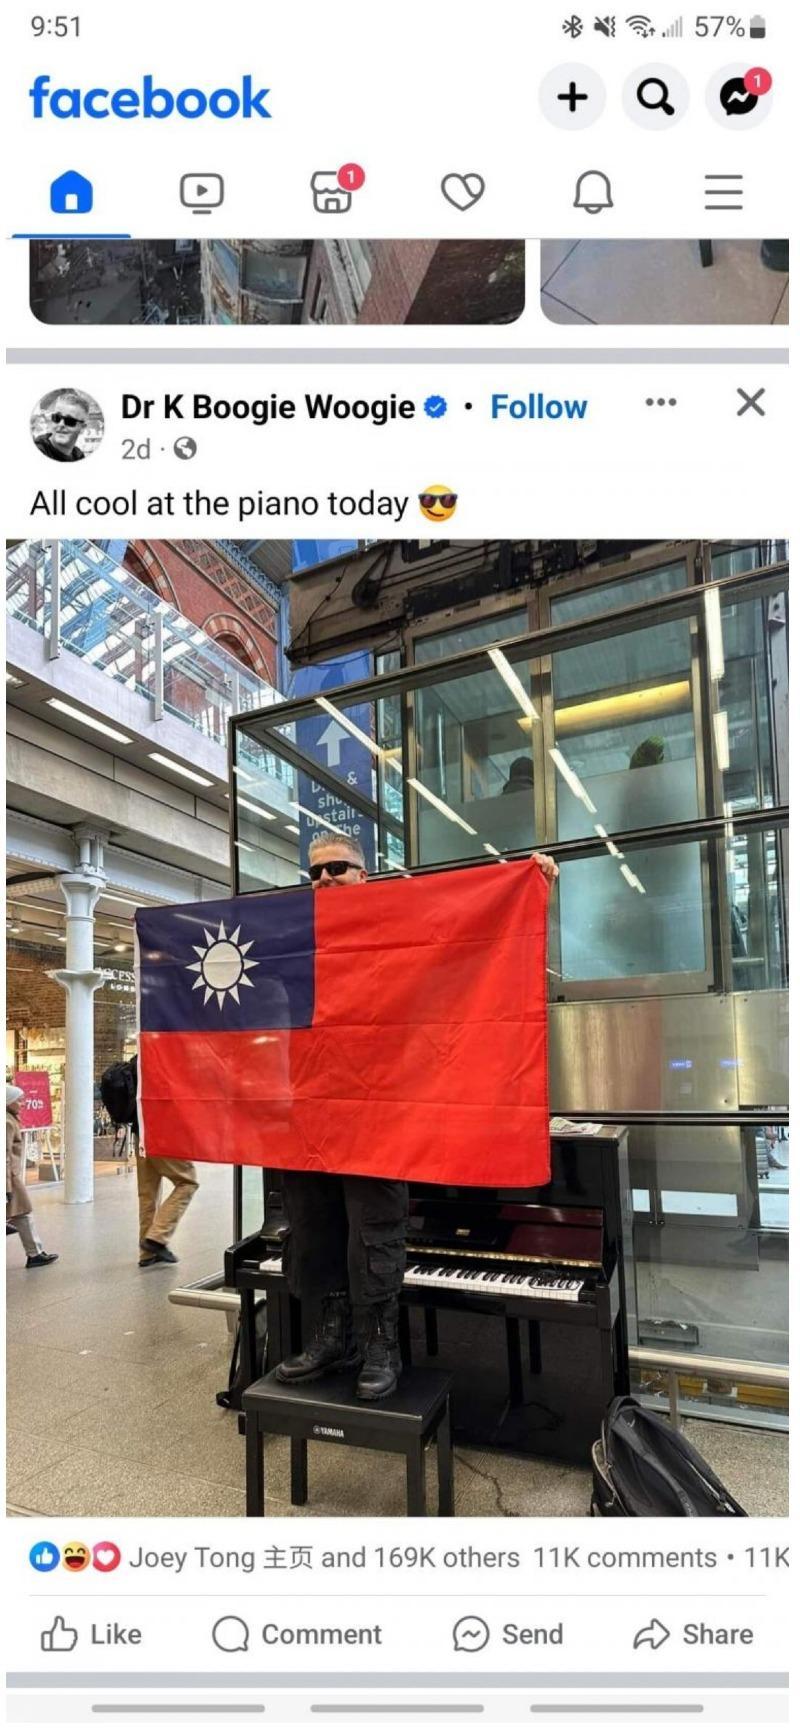 영국에서 피아노치다 중국인한테 시비걸린 아저씨 근황